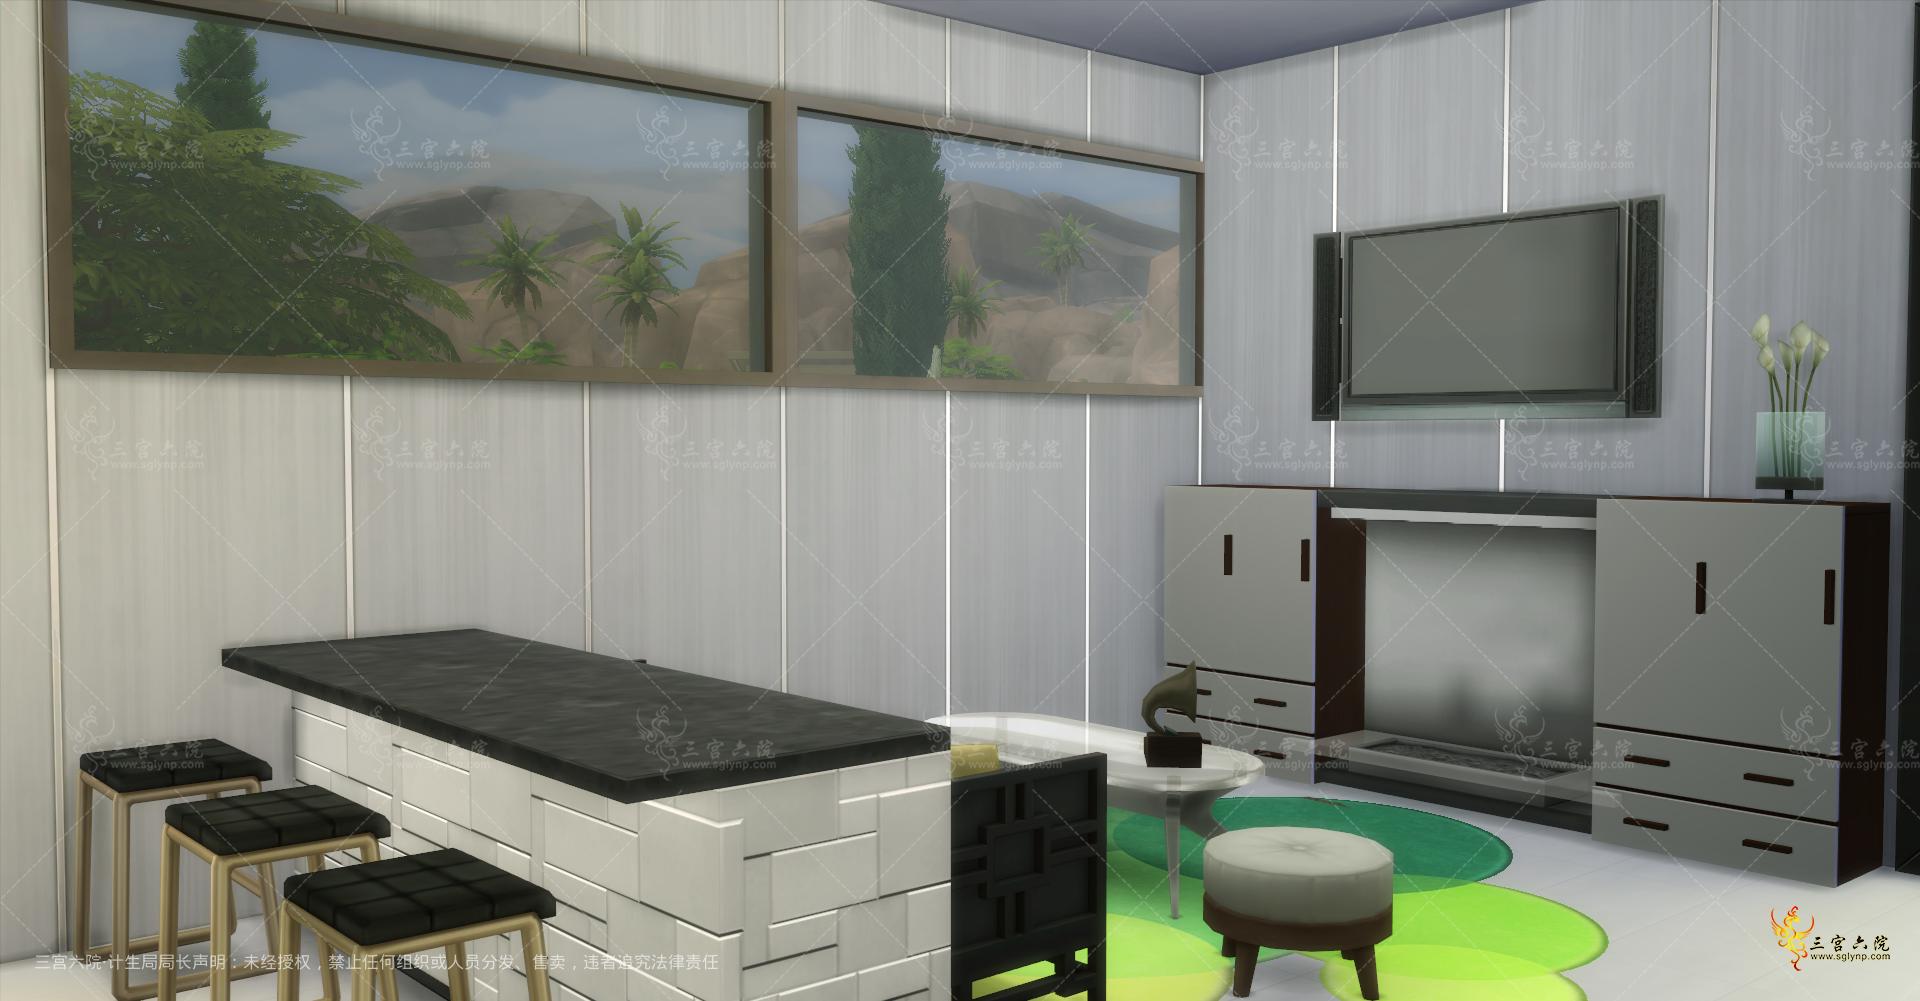 Sims 4 Screenshot 2021.11.22 - 22.03.05.83.png